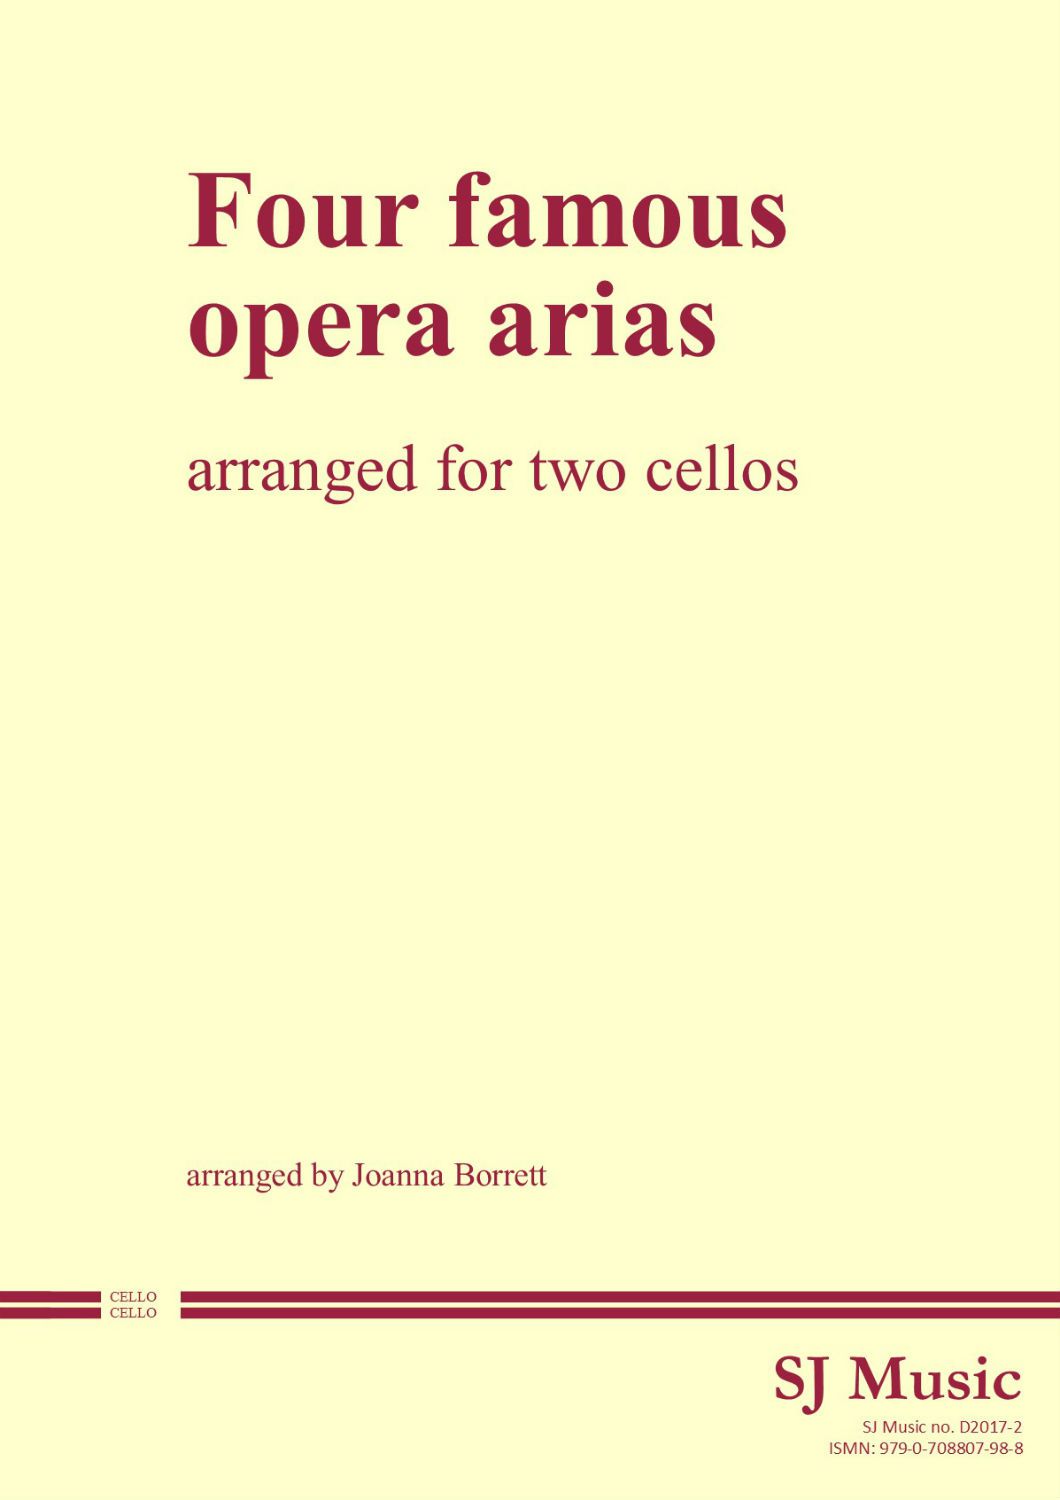 Four famous opera arias arranged for cello duet